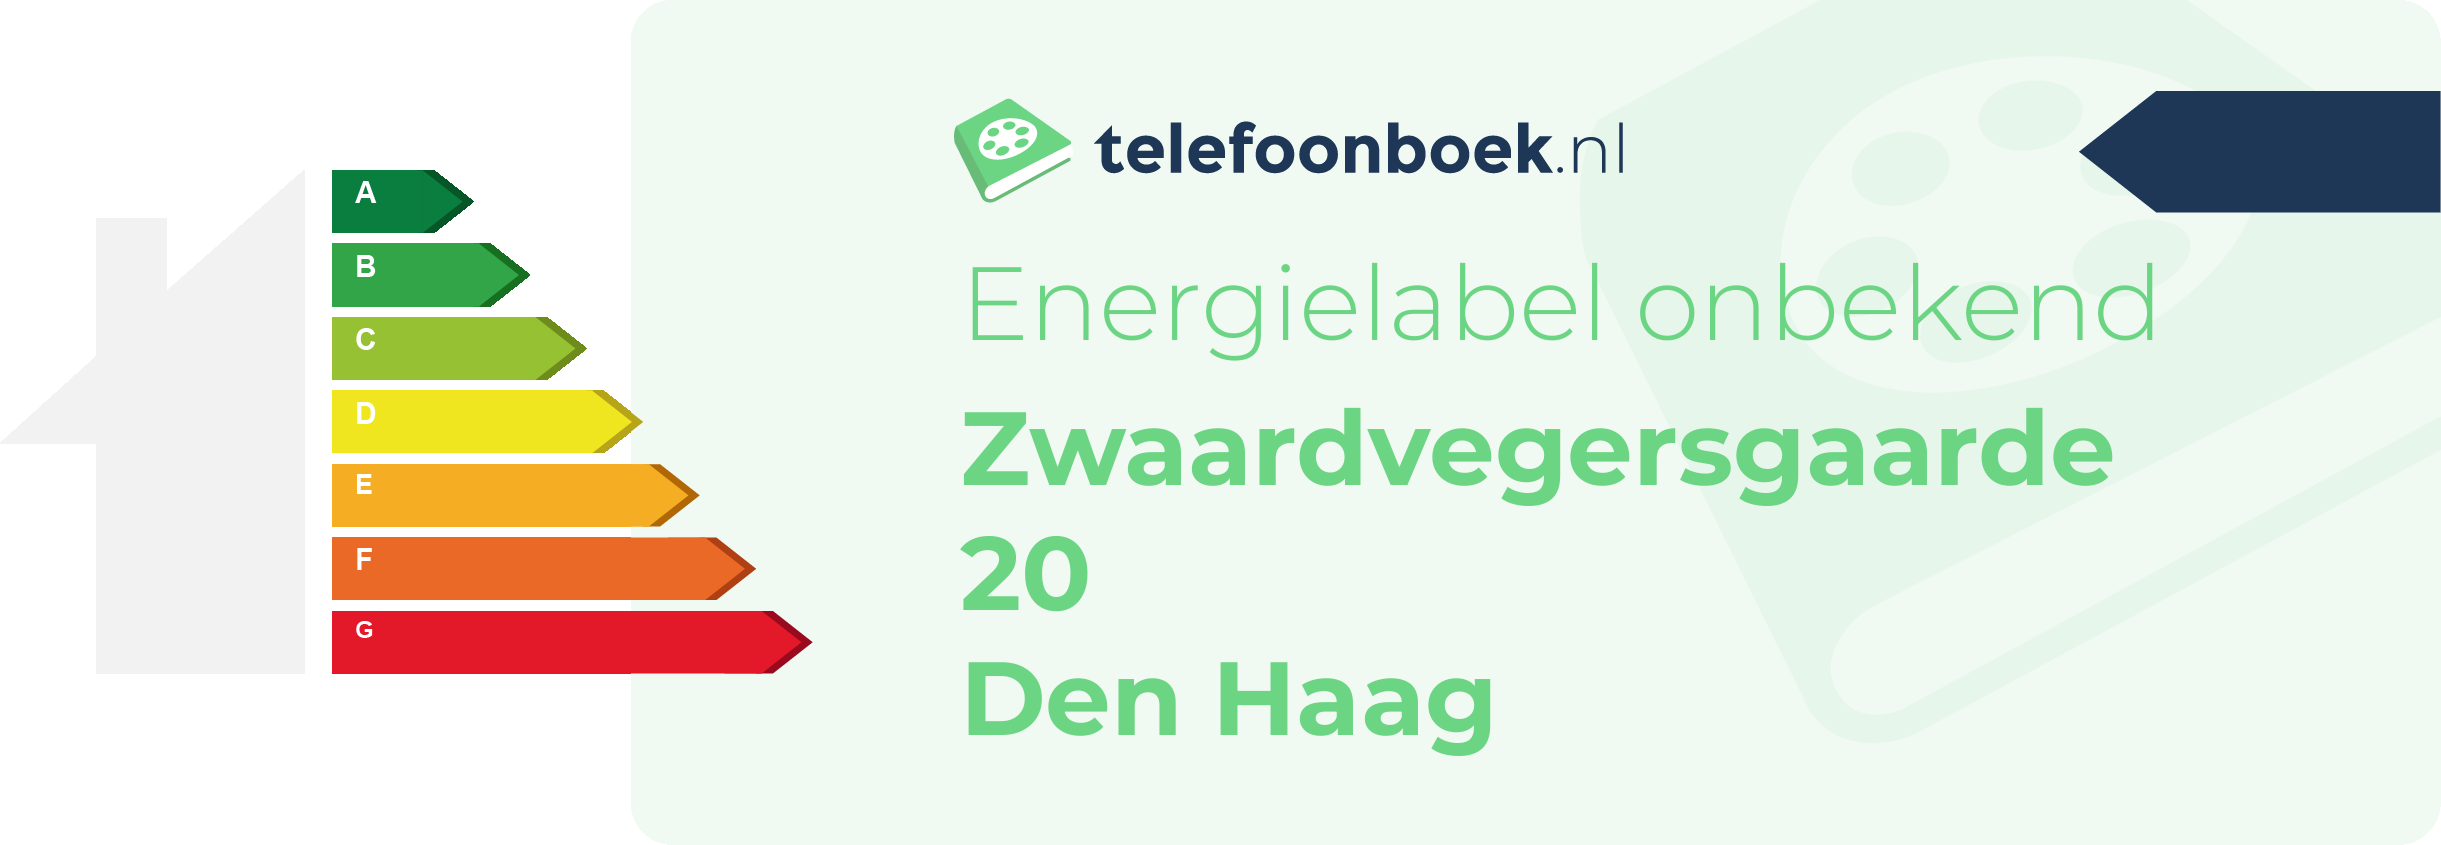 Energielabel Zwaardvegersgaarde 20 Den Haag